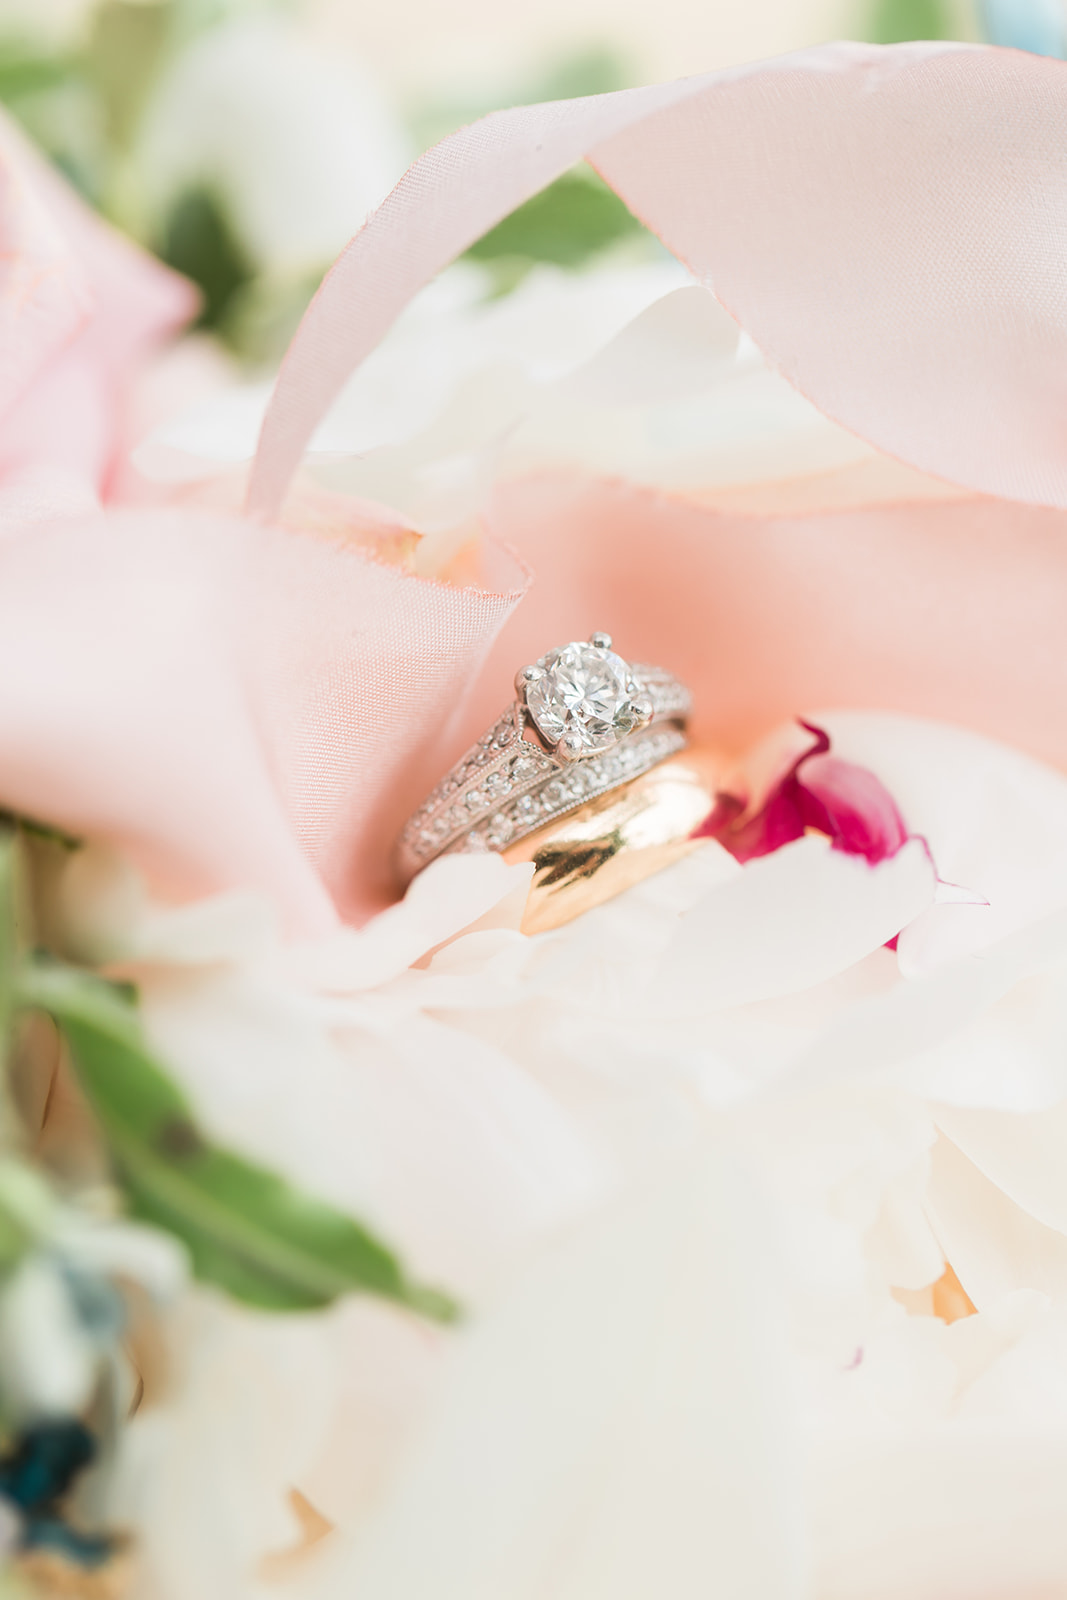 Wedding Rings in Spring Flowers